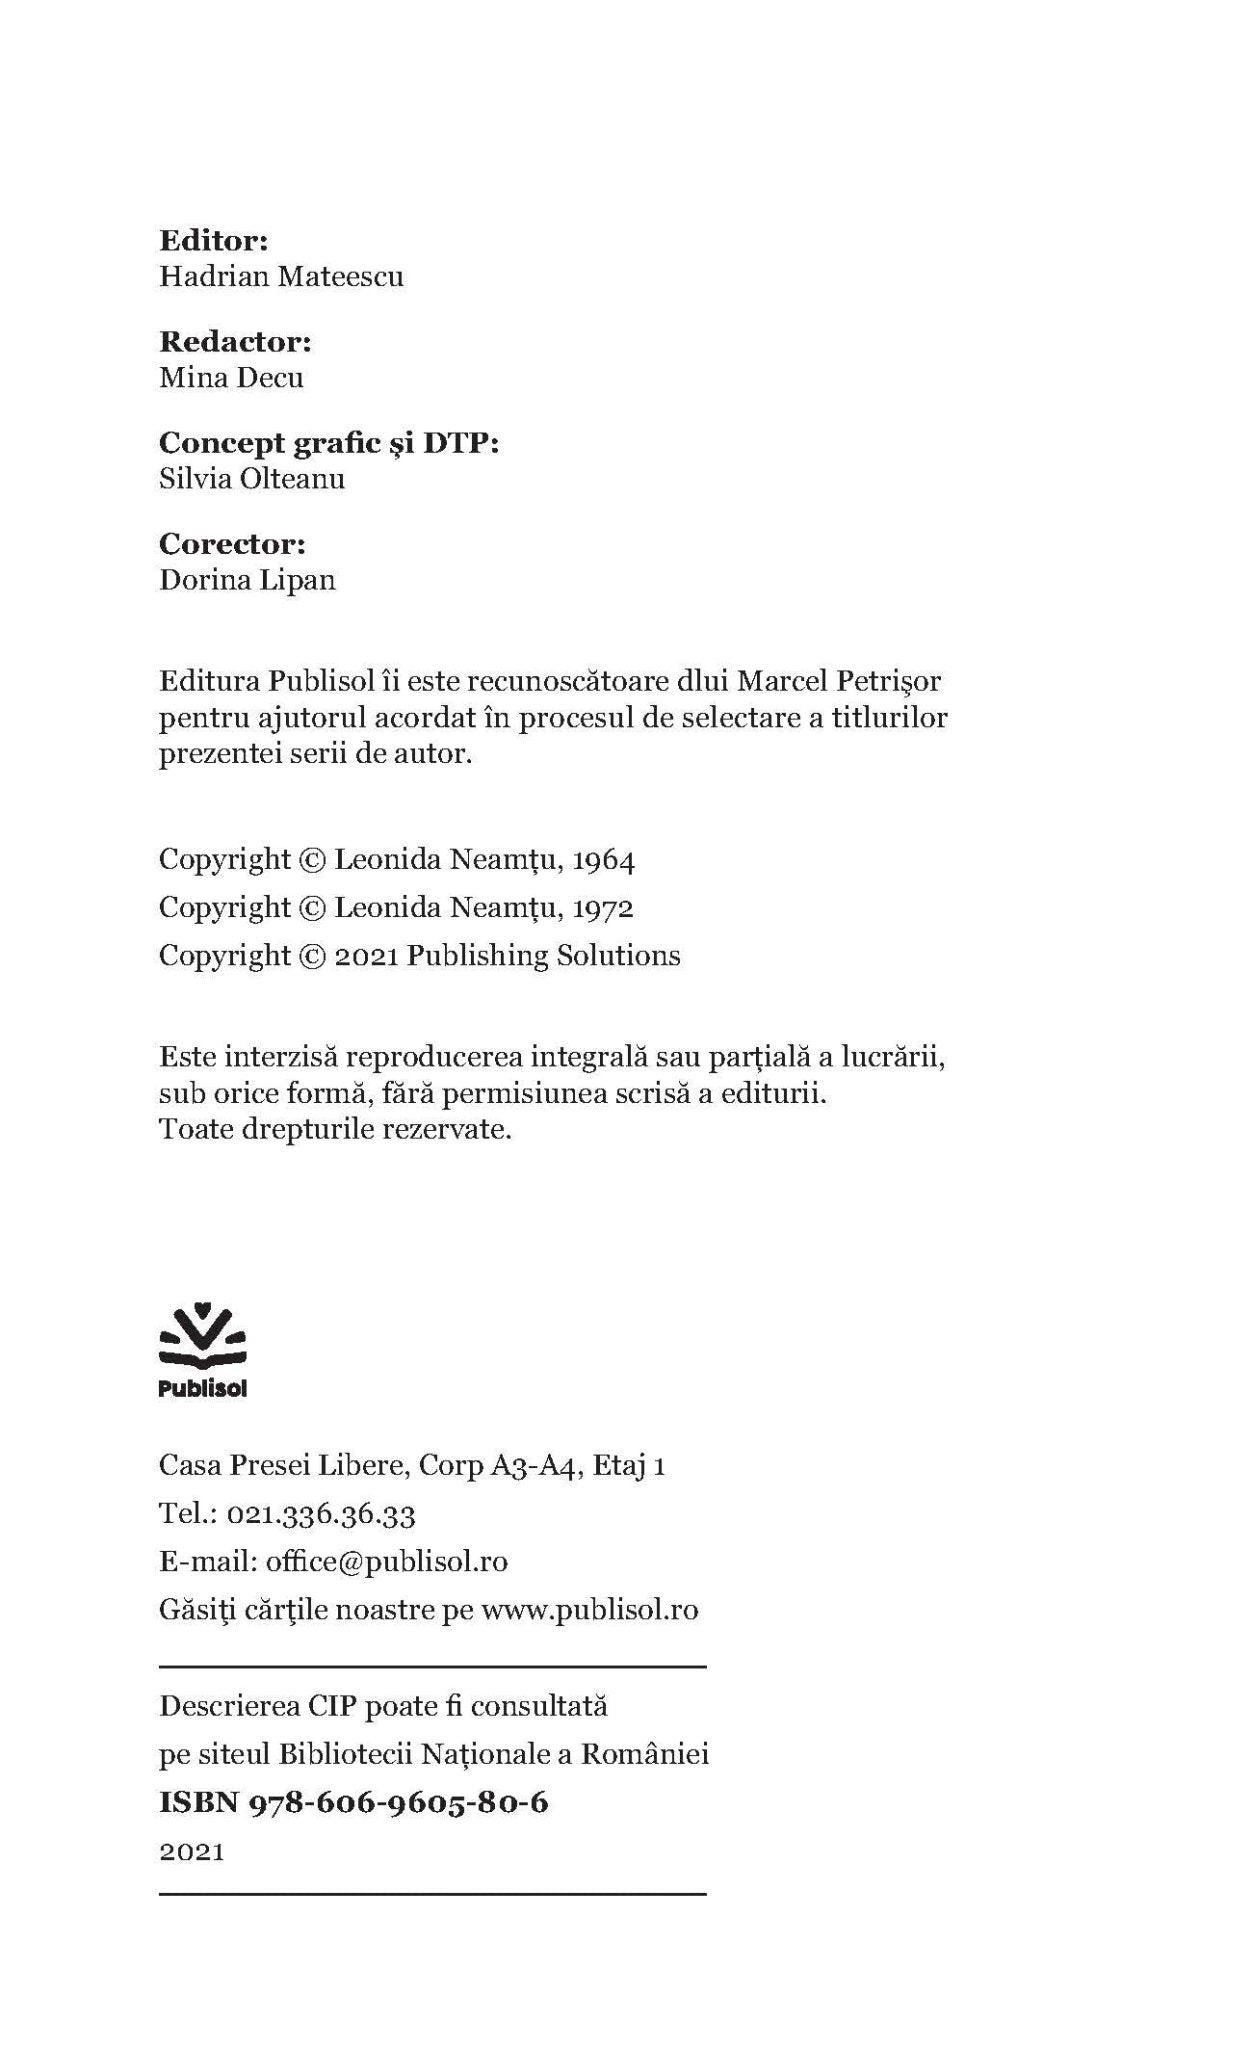 Teroare pentru colonel + Acoperis cu demon - Ed. digitala - PDF - Publisol.ro